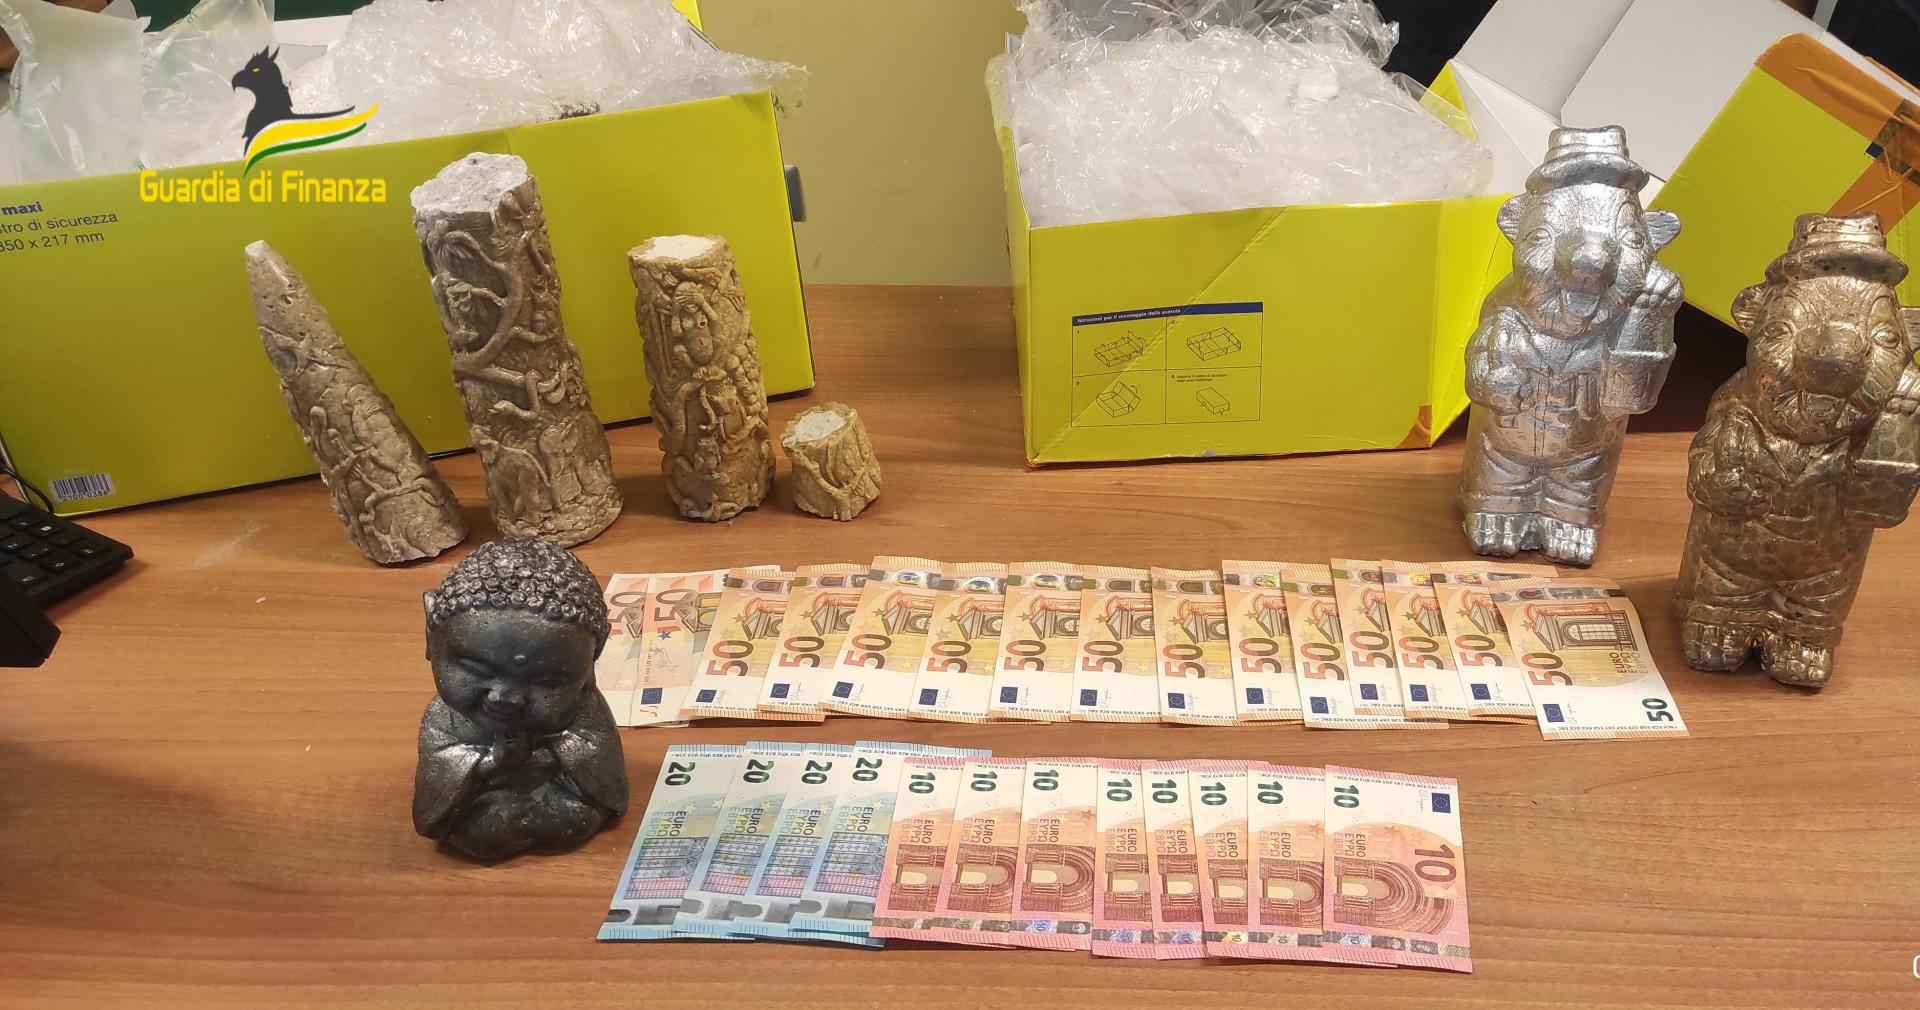 Droga: a Varese arrestati un narcotrafficante internazionale in fuga all’estero ed un insospettabile orafo